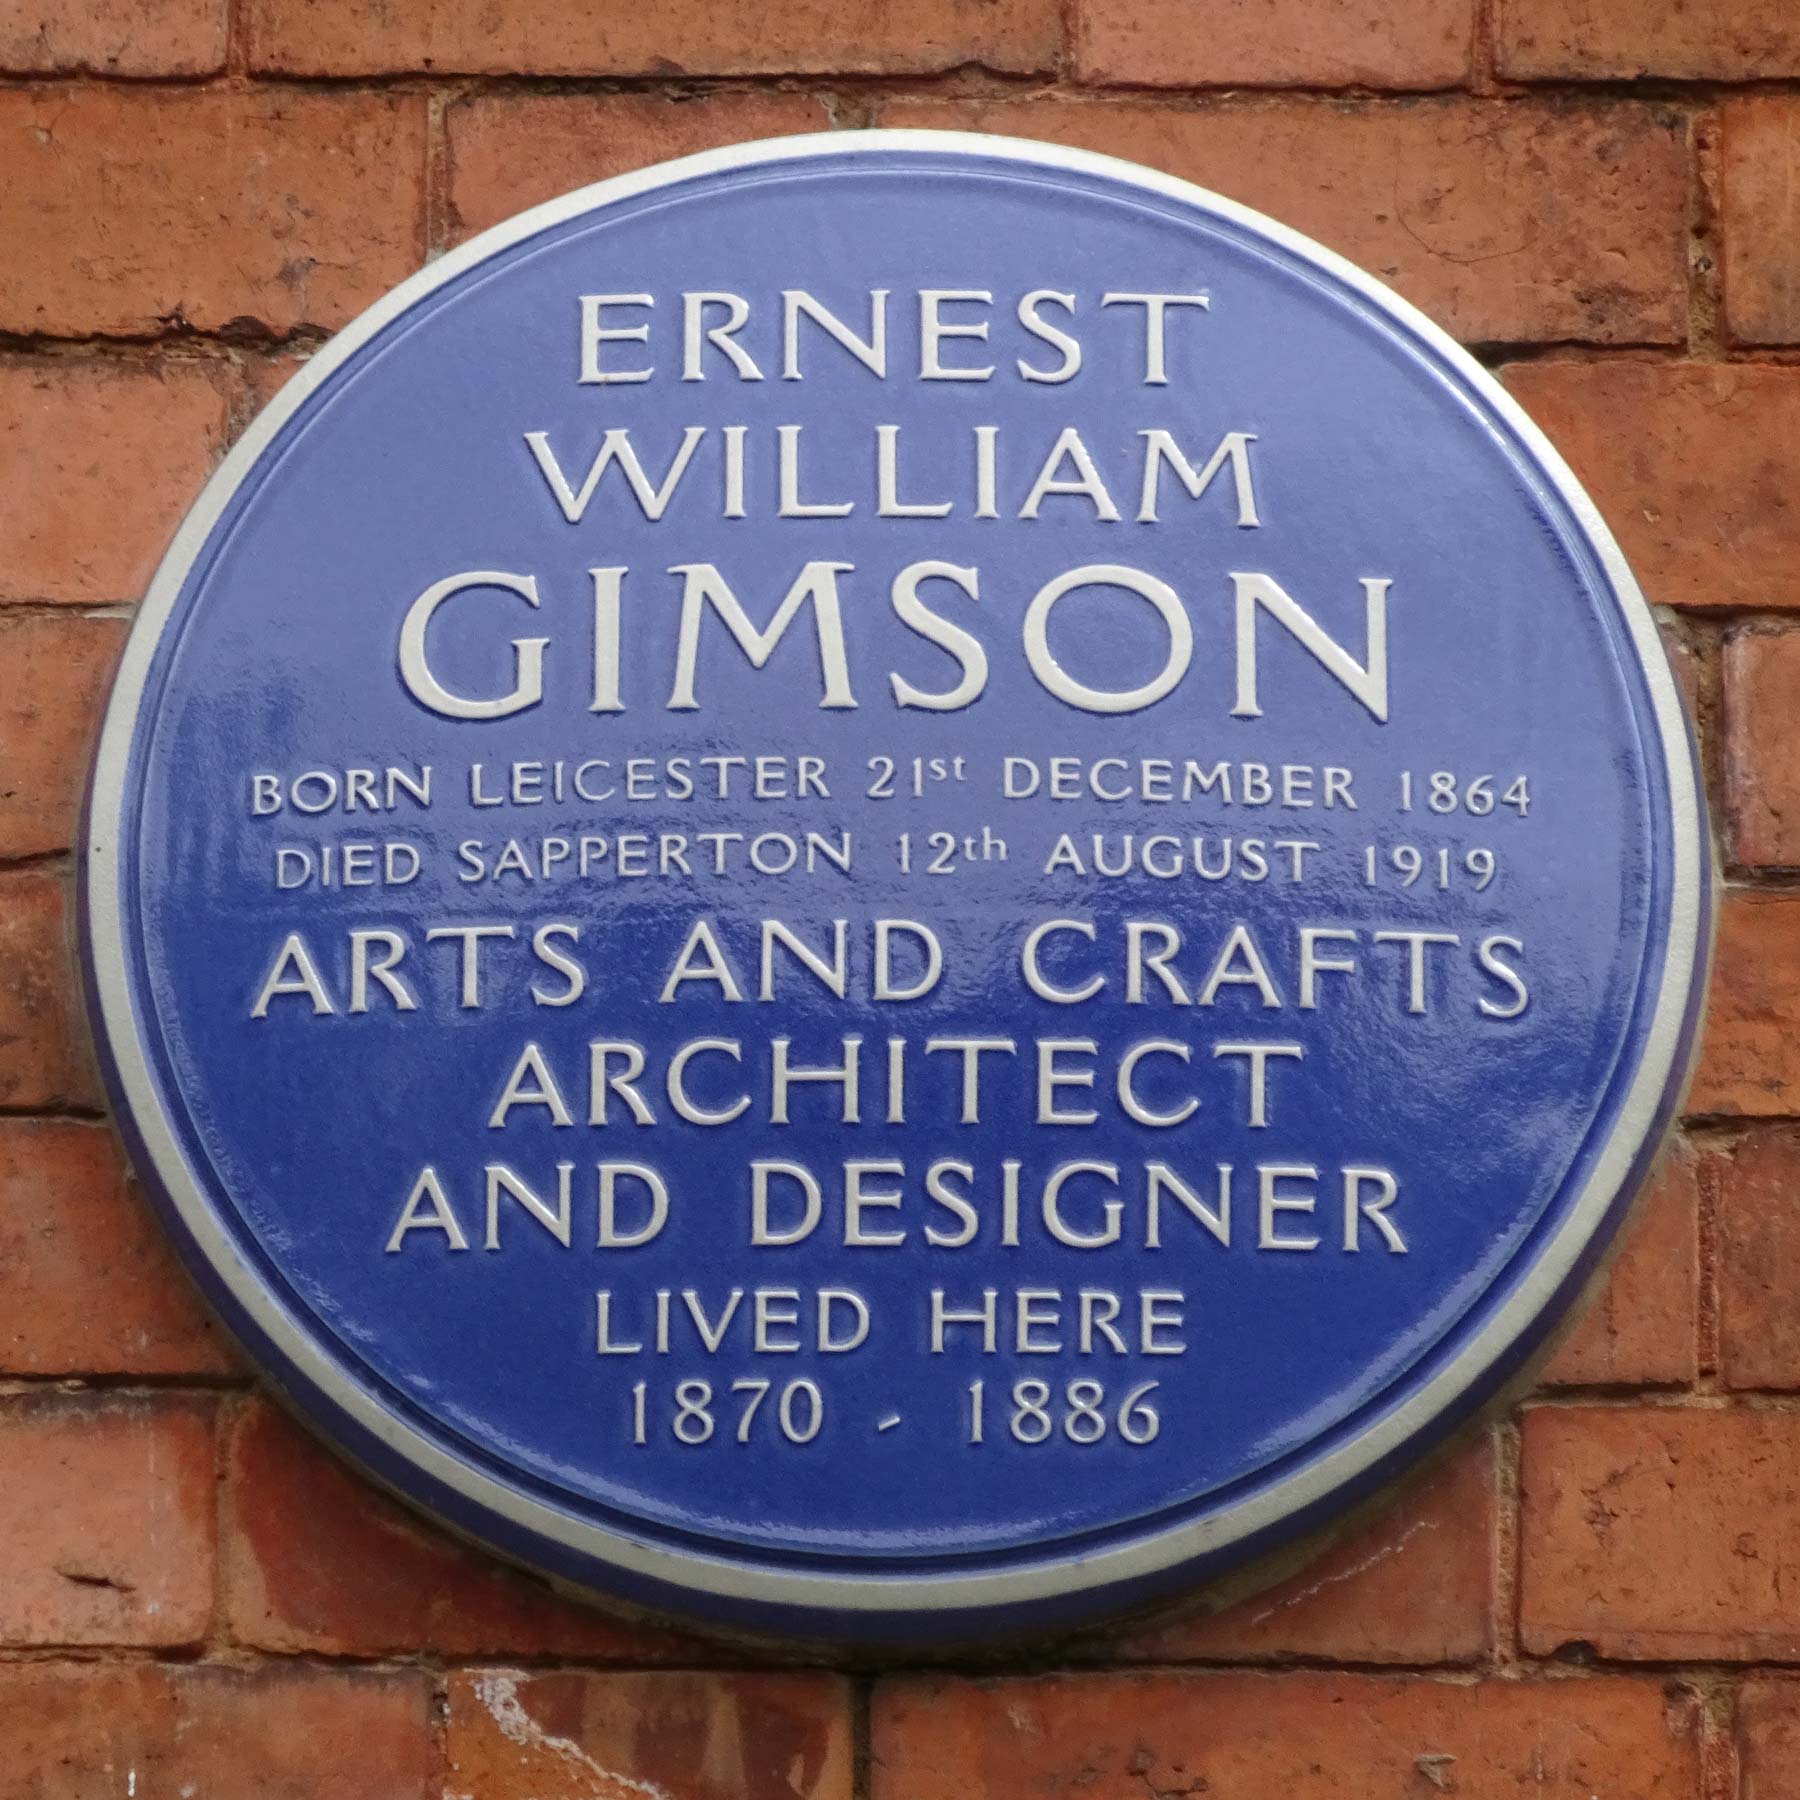 Blue round plaque with some brief details about Ernst William Gimson